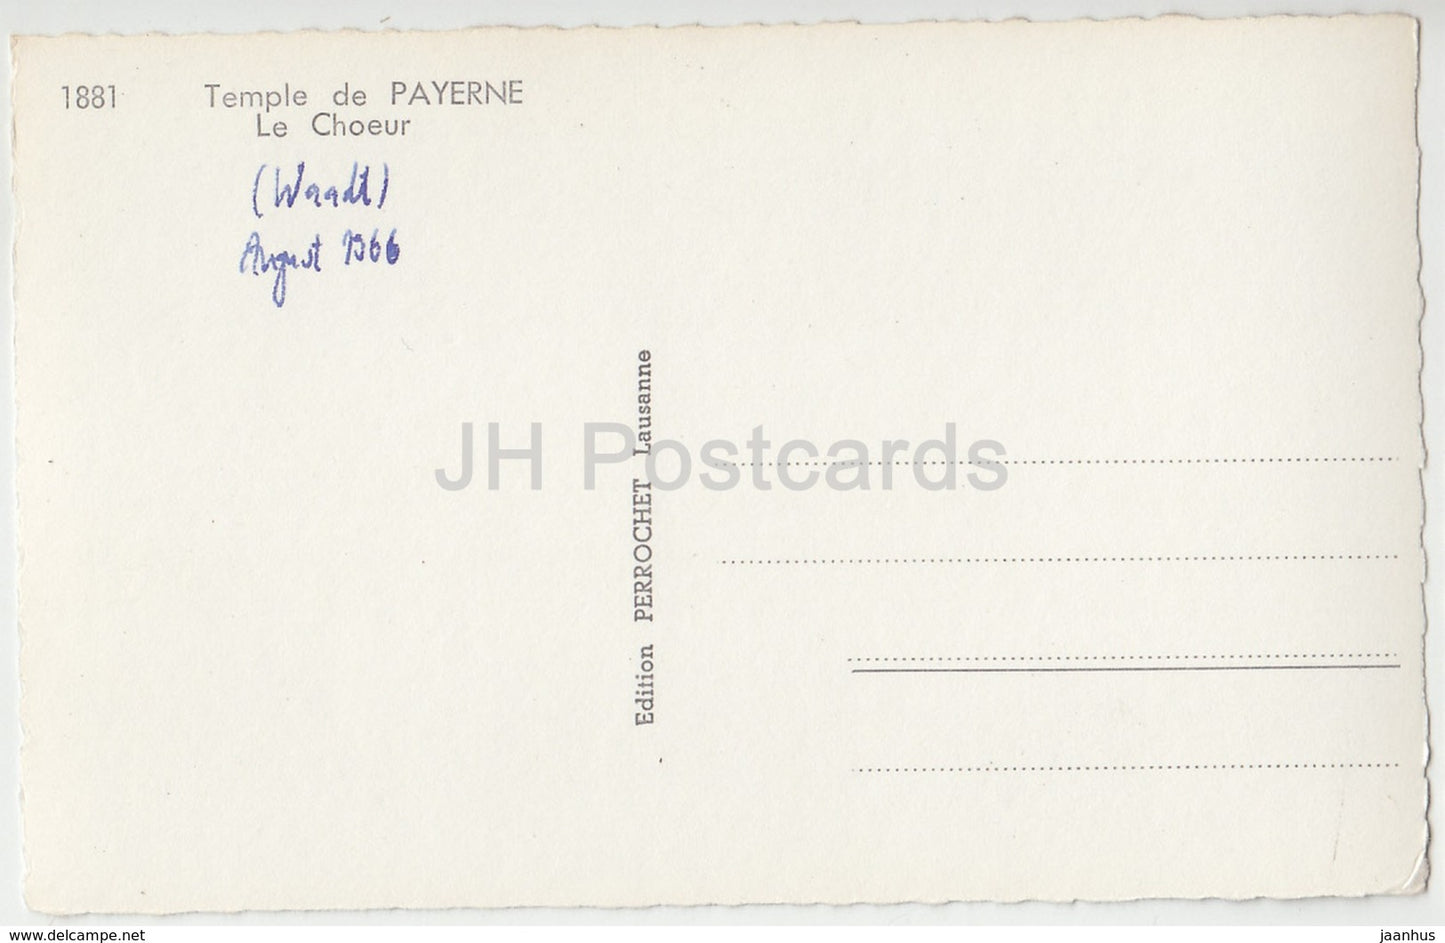 Temple de Payerne - Le Choeur - 1881 - Suisse - 1966 - cartes postales anciennes - occasion